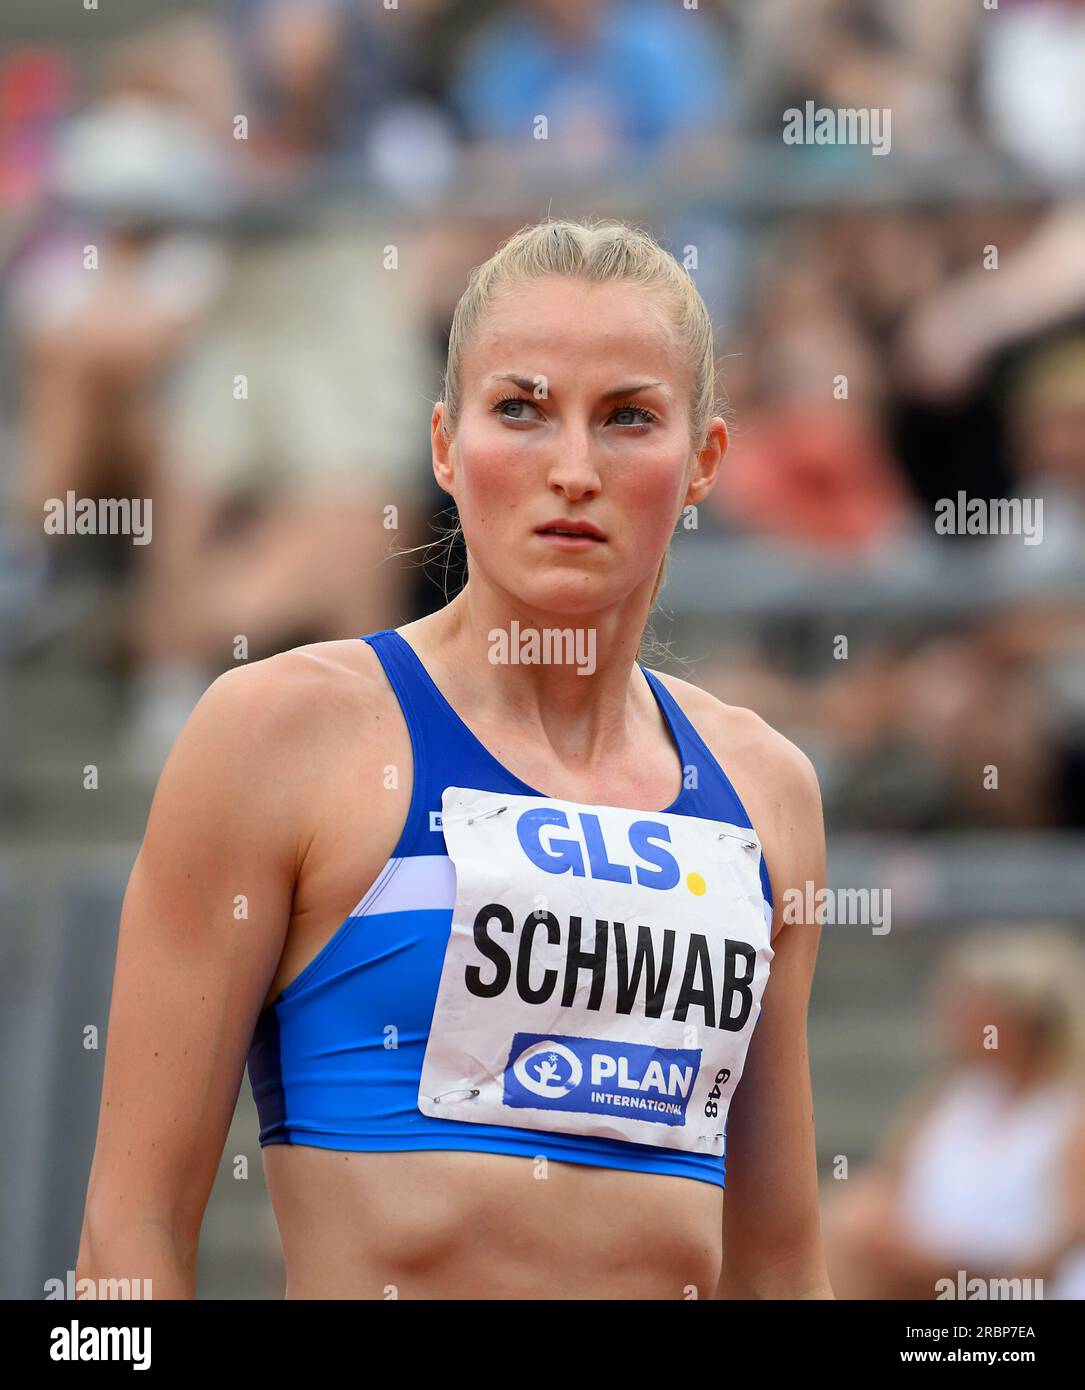 Corinna SCHWAB (LAC Erdgas Chemnitz) finale femminile di 400 m, il 9 luglio 2023 Campionati tedeschi di atletica leggera 2023, dall'8 luglio. - 09.07.2023 a Kassel/ Germania. Foto Stock